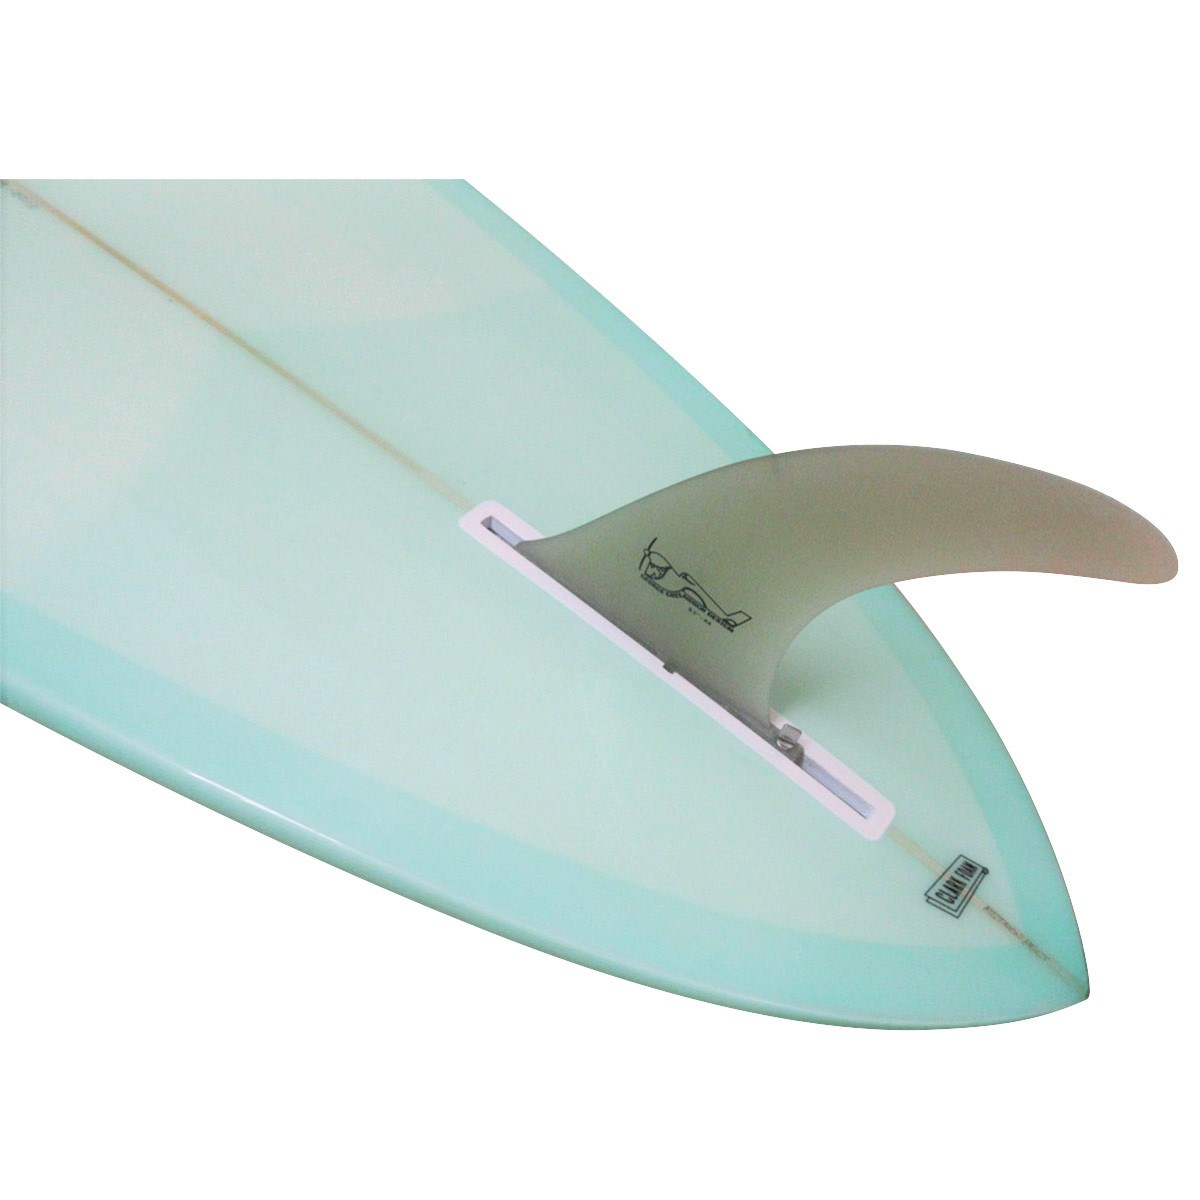 GEAR`S SURFBOARDS / SINGLE FIN 7`2